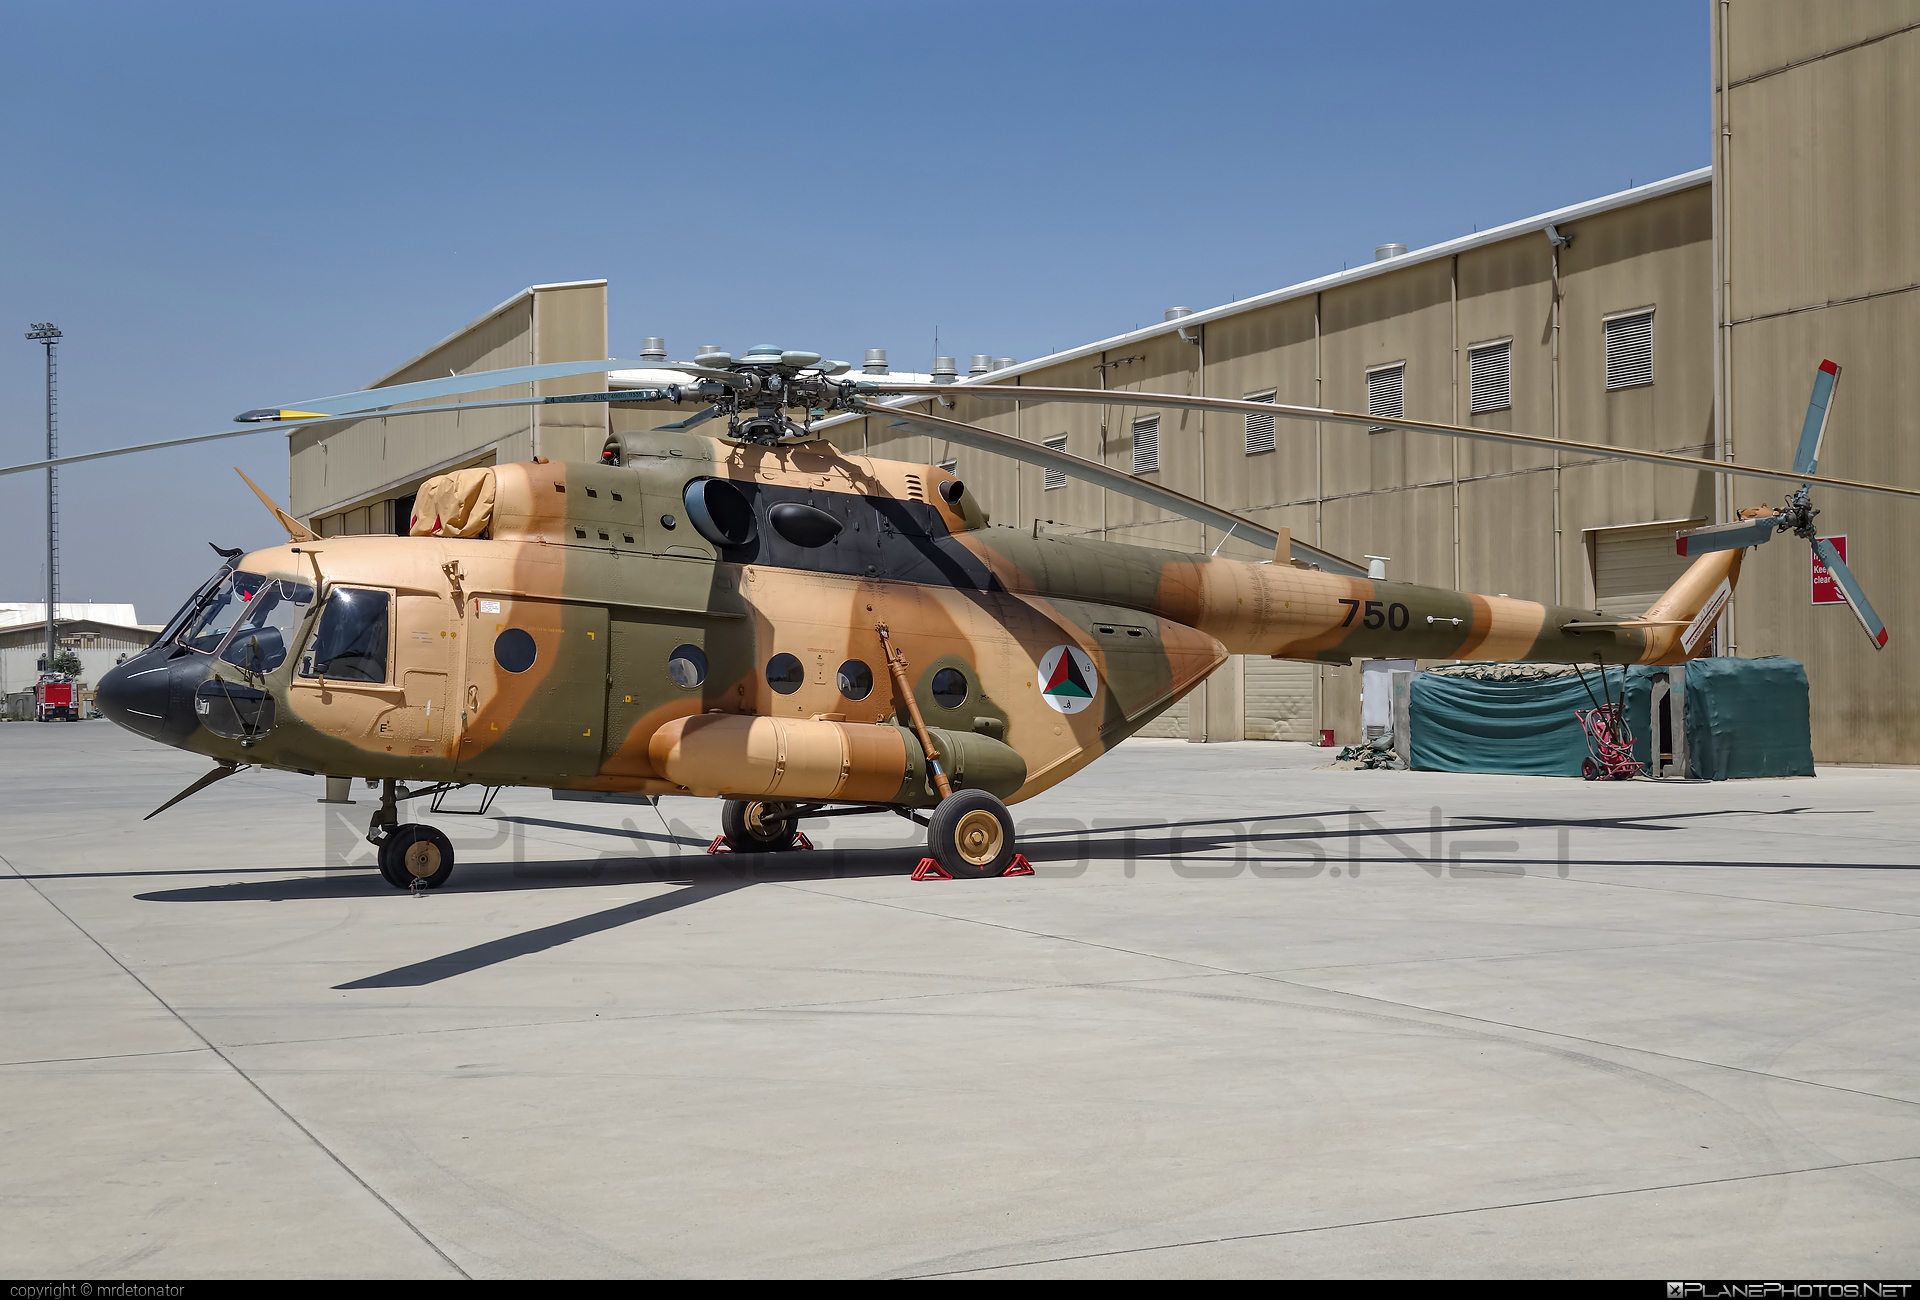 Mil Mi-17V-5 - 750 operated by Afghan Air Force #afghanairforce #mi17 #mi17v5 #mil #mil17 #milhelicopters